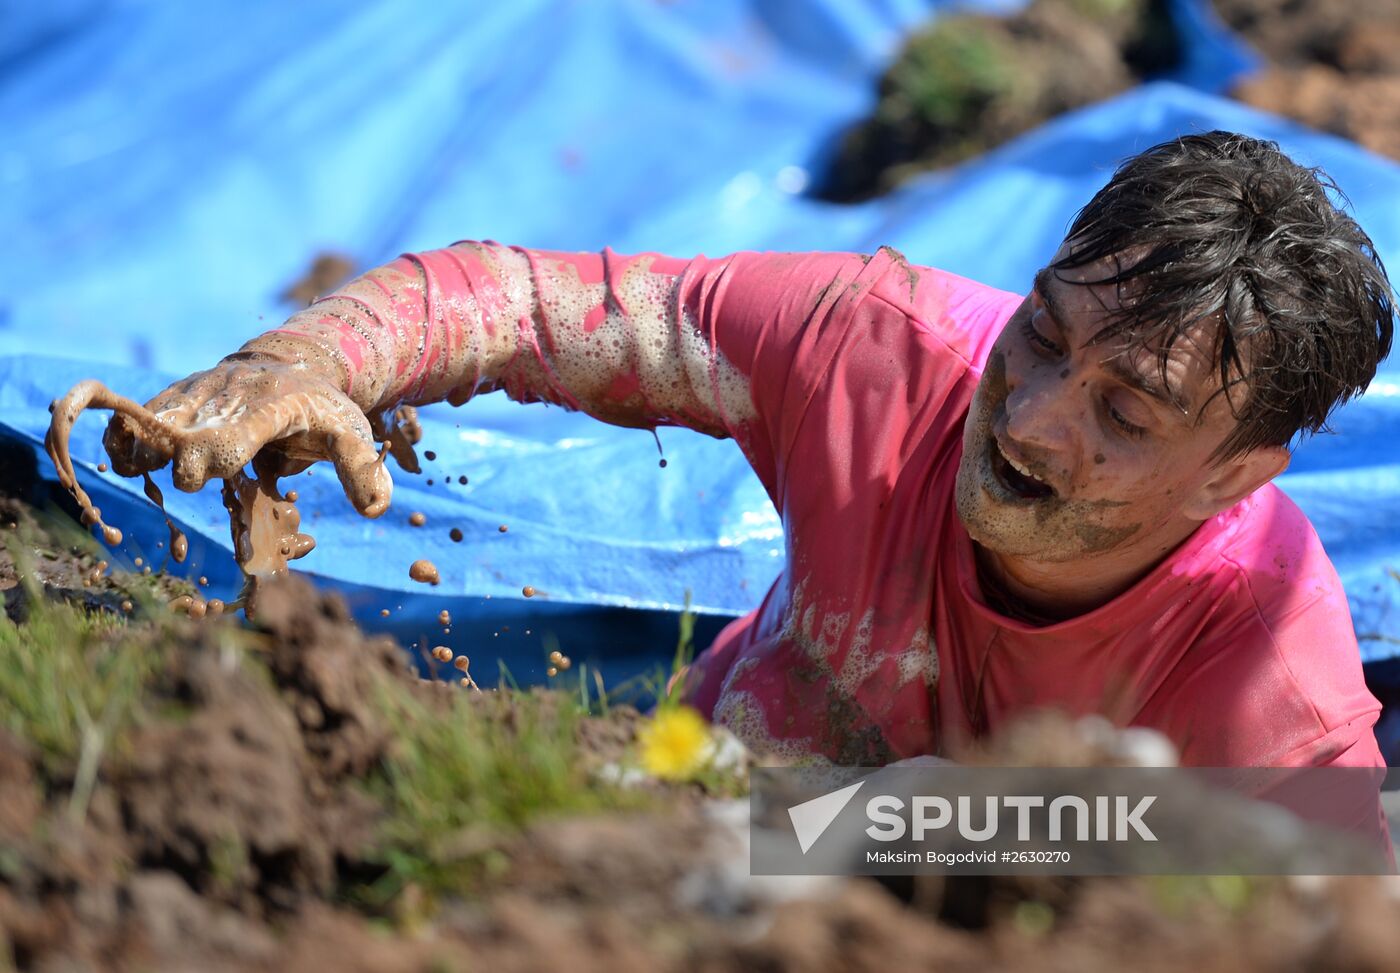 Mud Race in Kazan